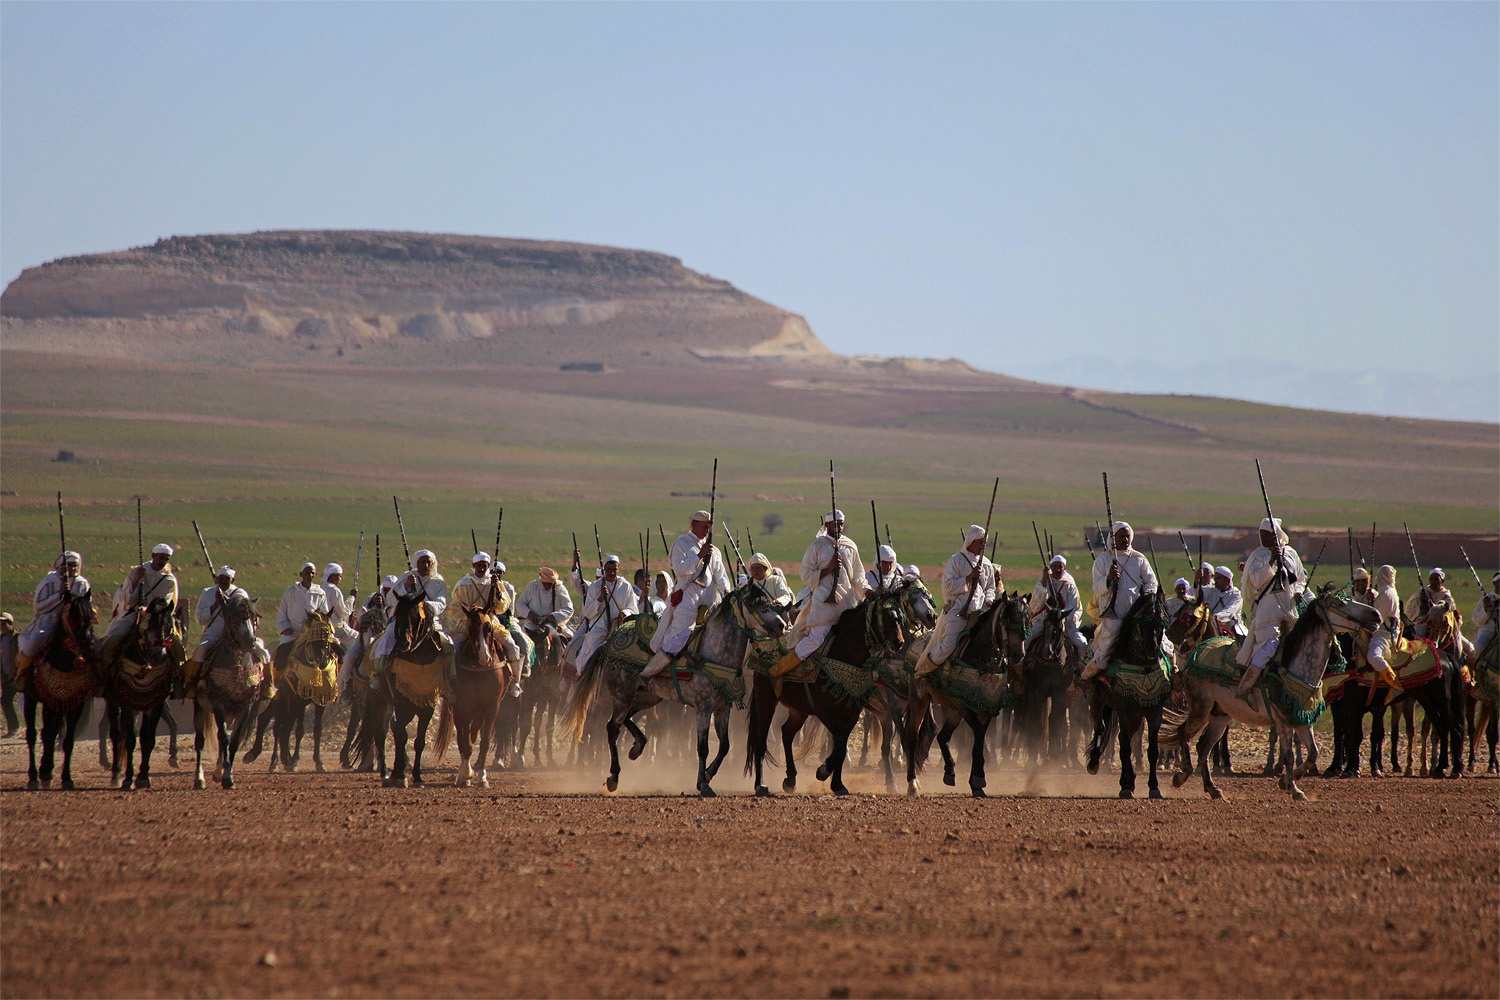 bill-hocker-horse-fantasia-between-marrakech-and-essaouira-morocco-2012